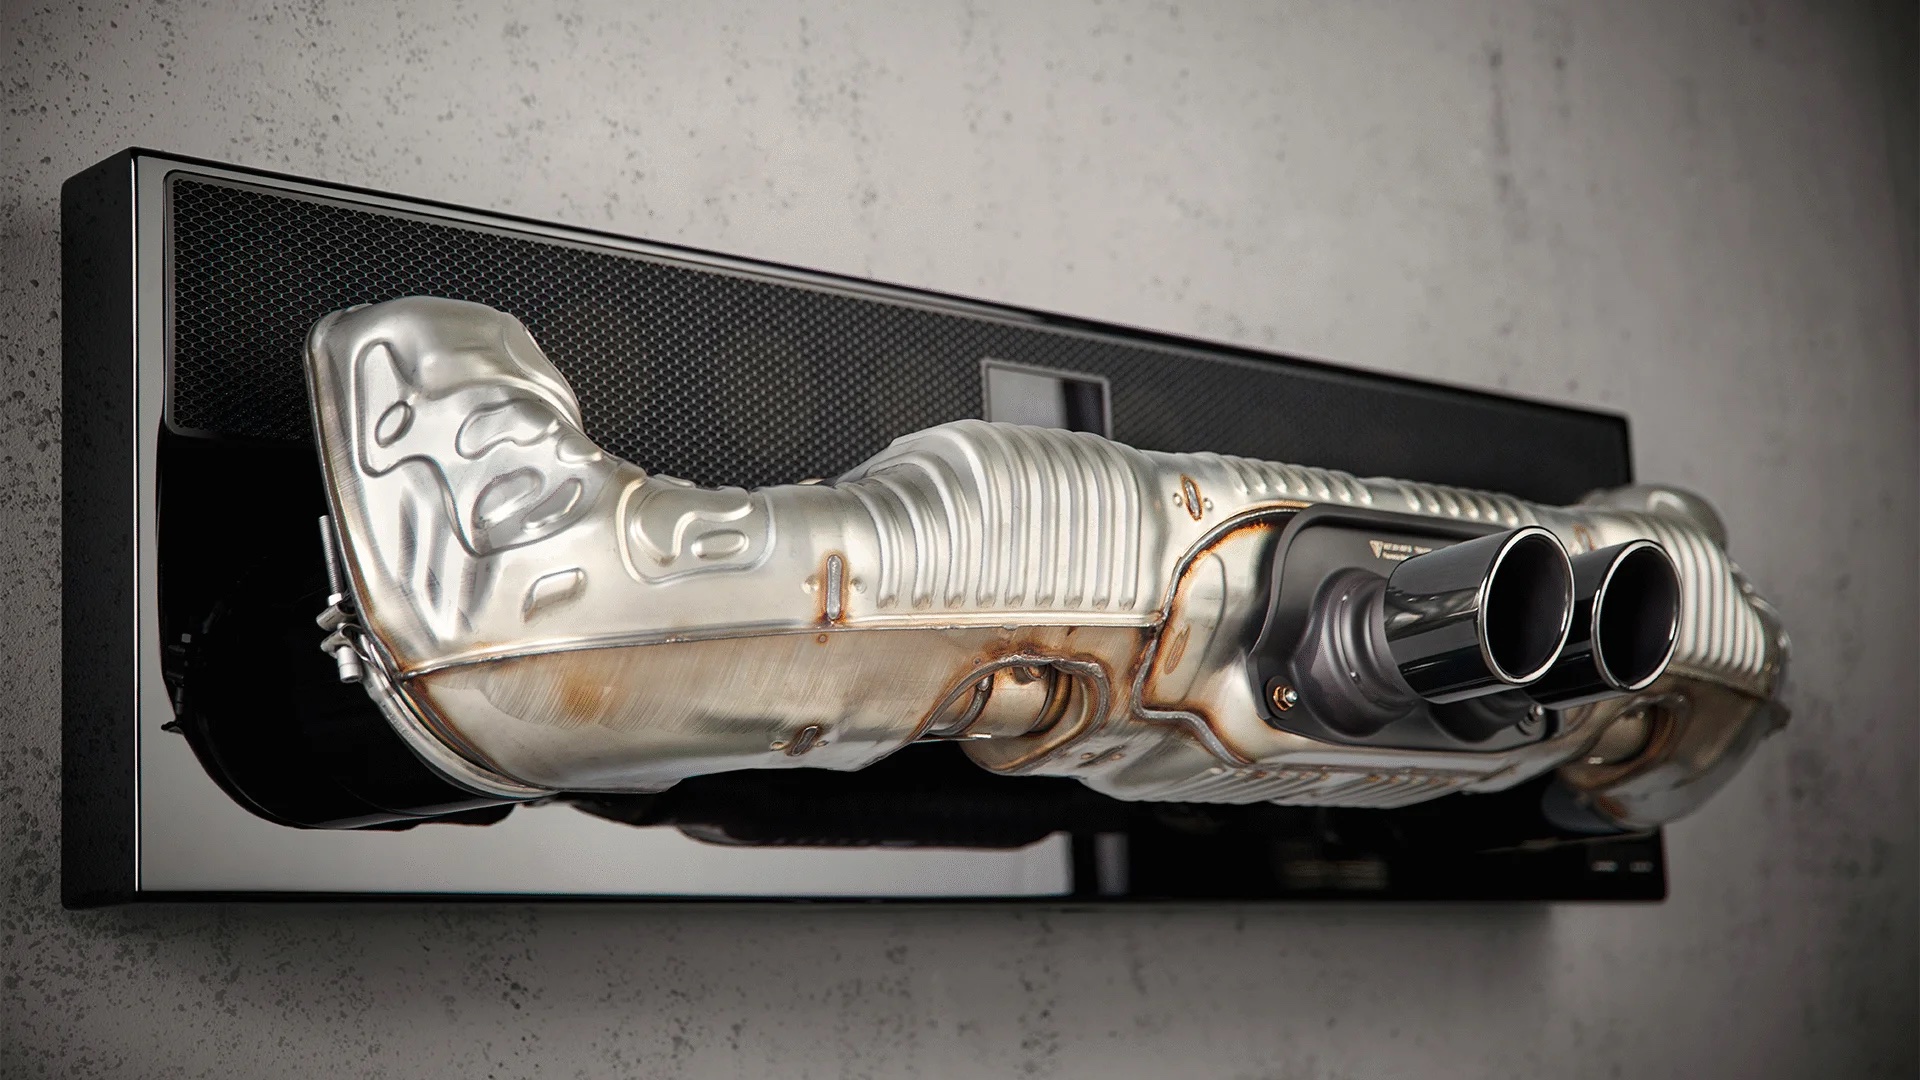 นายก็มีท่อไอเสียติดบ้านได้นะ Porsche เปิดตัว 911 Soundbar 2.0 Pro ซาวด์บาร์ที่ติดท่อไอเสียรถ!